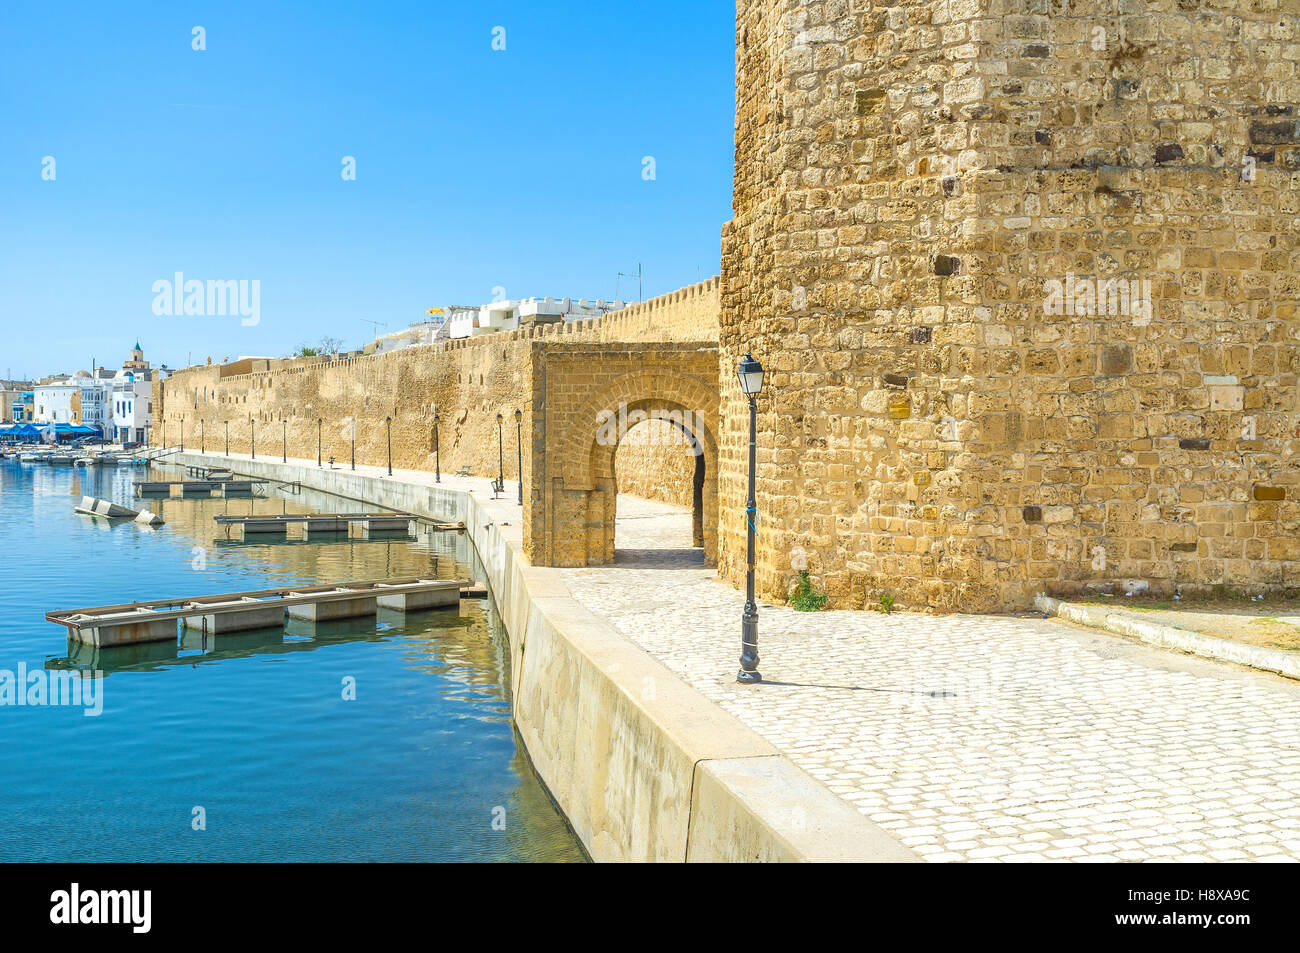 El astillero pesquera vecinos con la ciudadela medieval de Kasbah, Bizerta, Túnez. Foto de stock